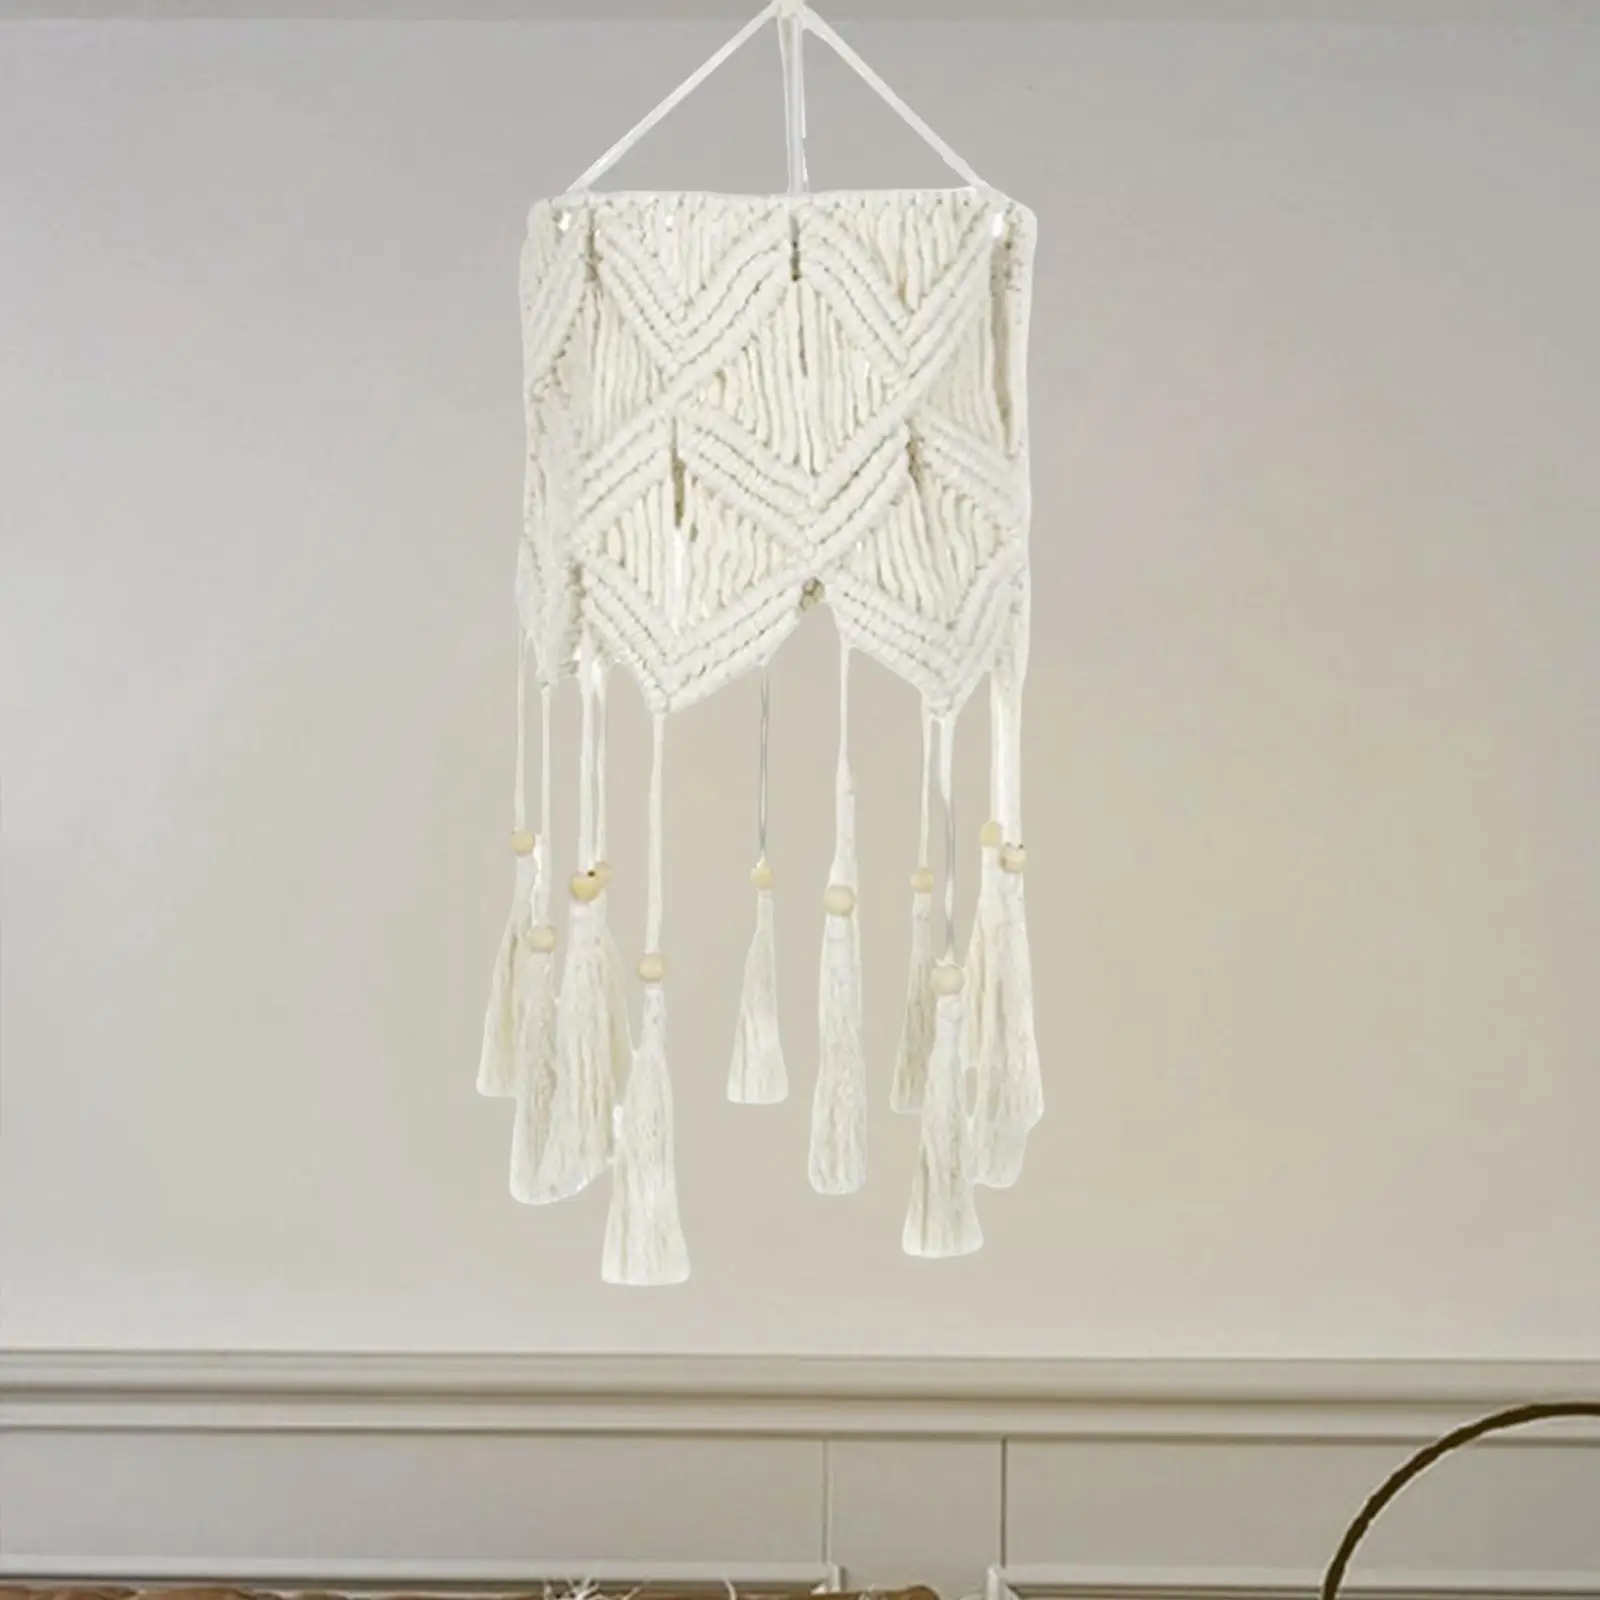 

Knitting Lamp Shade Handwoven Pendant Light Cover Handmade Macrame Lampshade for Bedroom Office Children Room Home Dorm Room